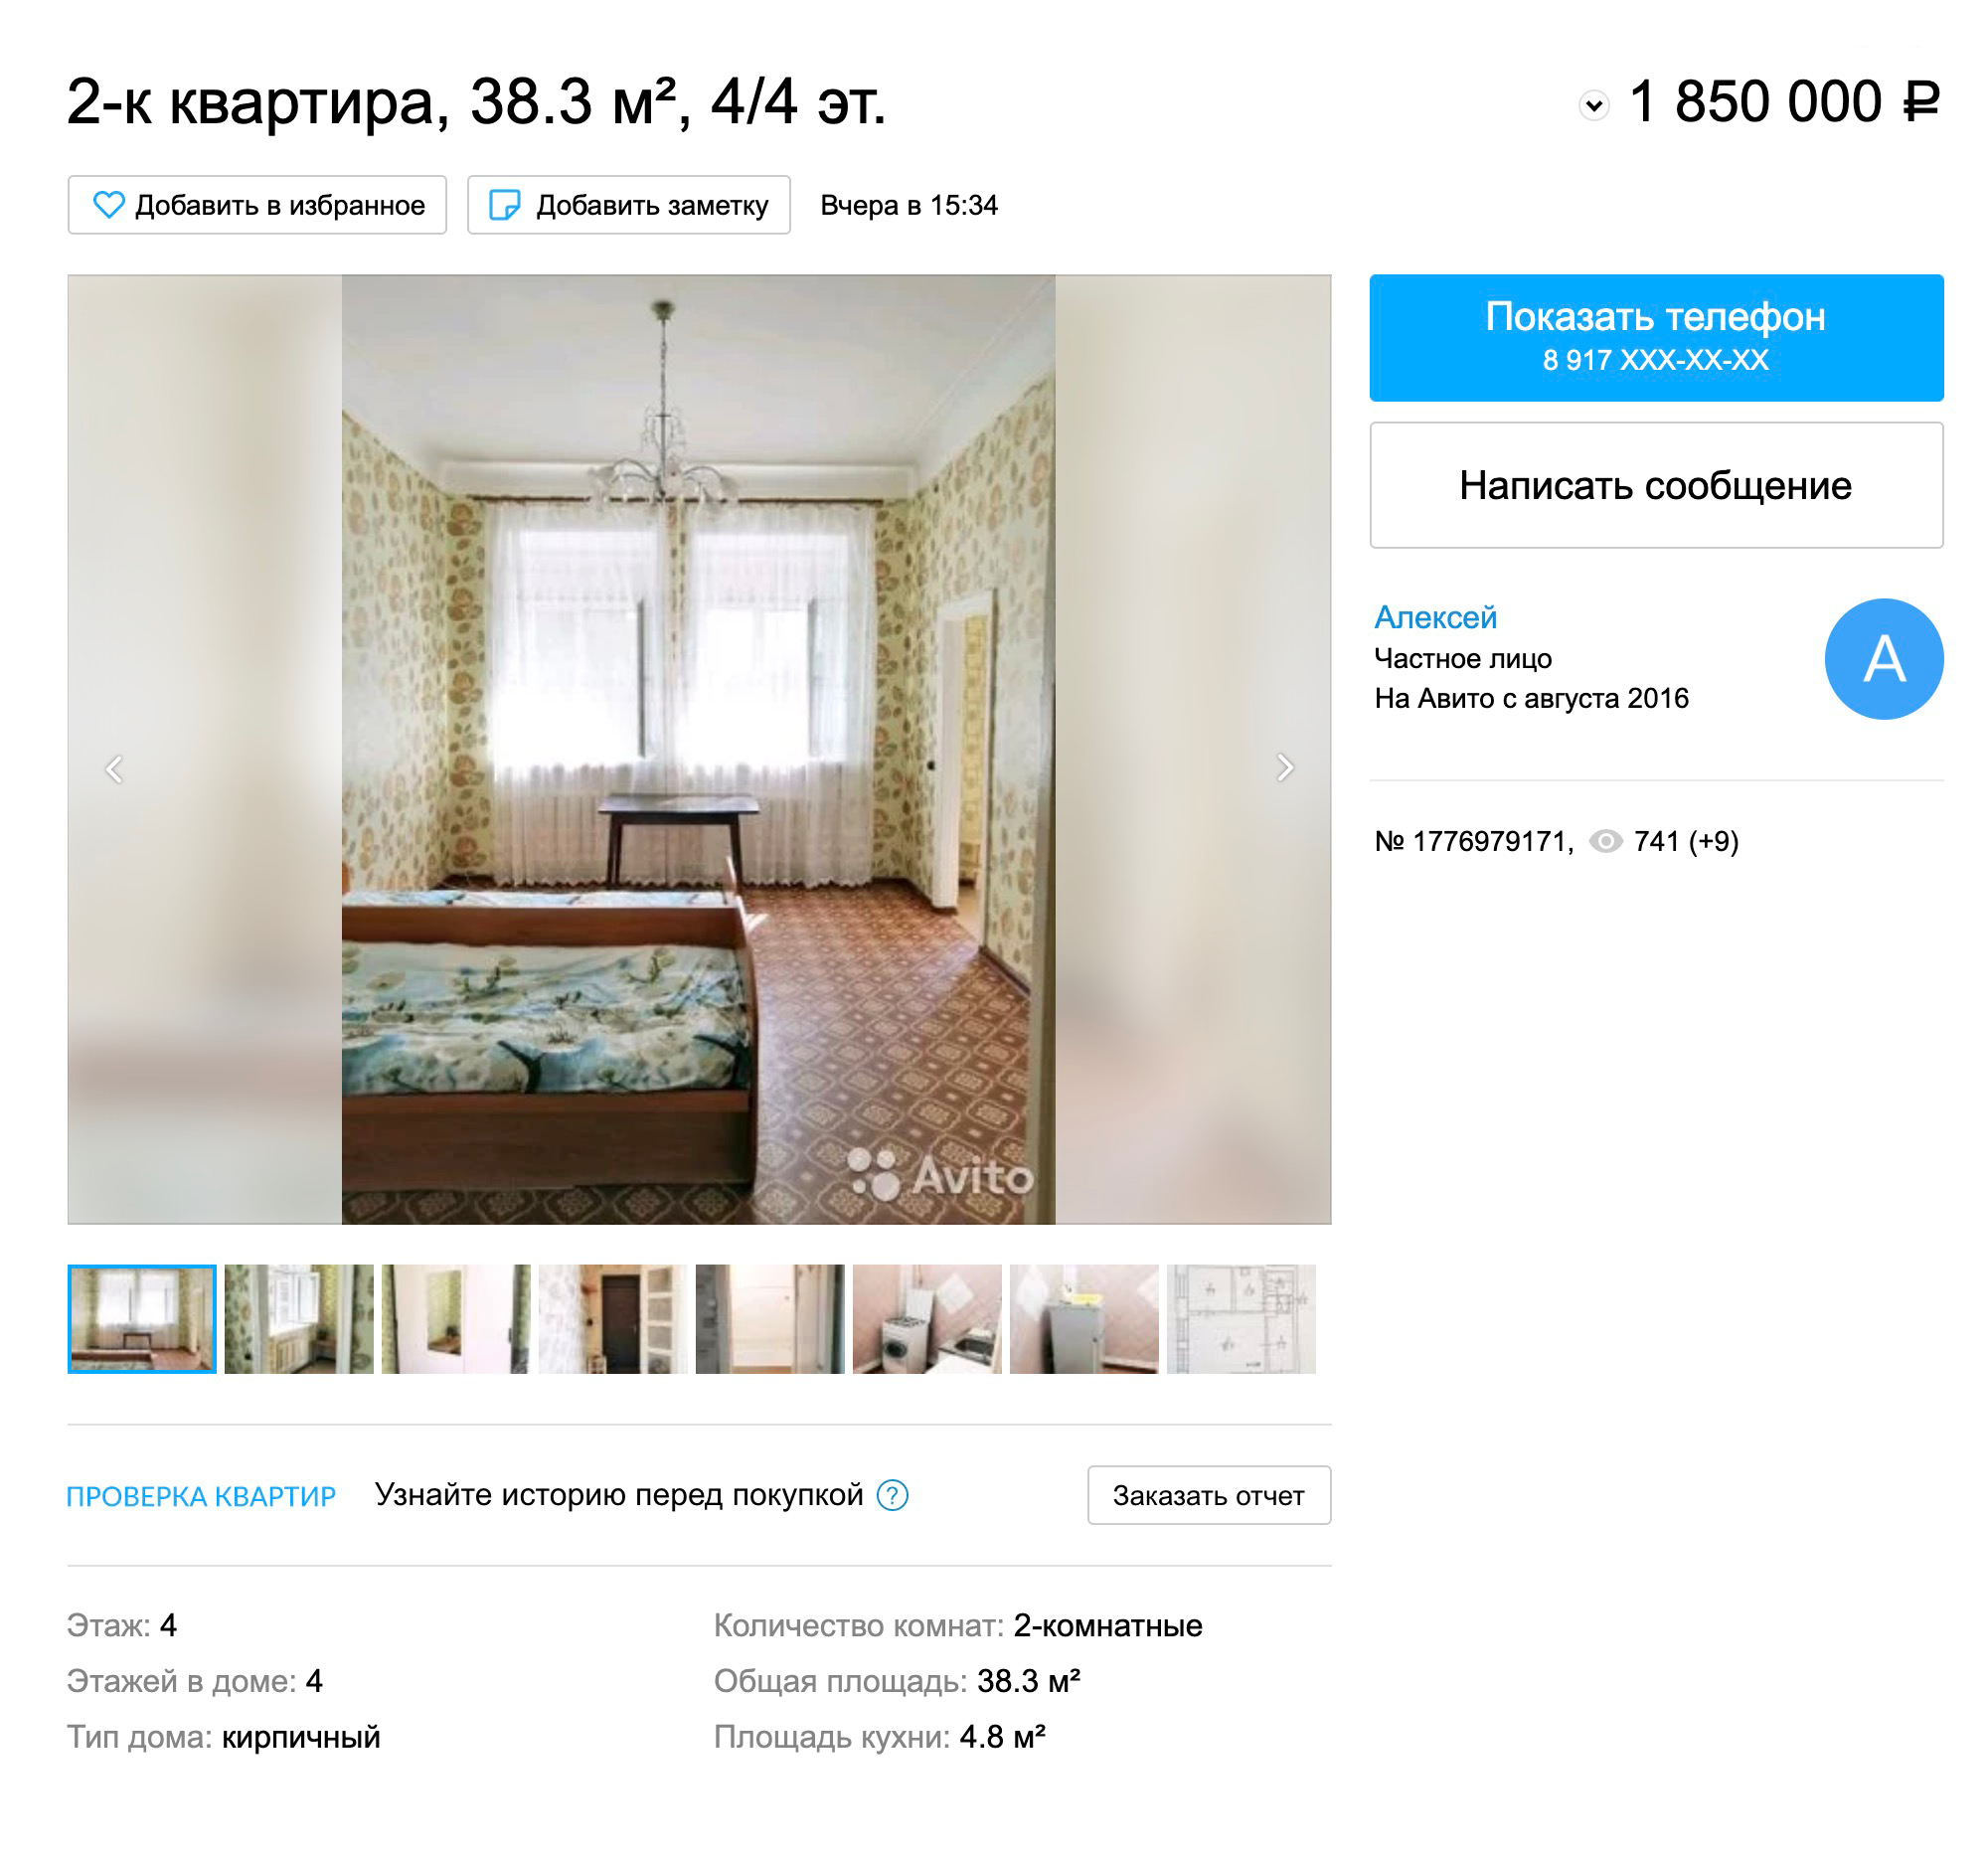 Двушка в старом доме в центре Саратова обойдется в 1,85 млн рублей